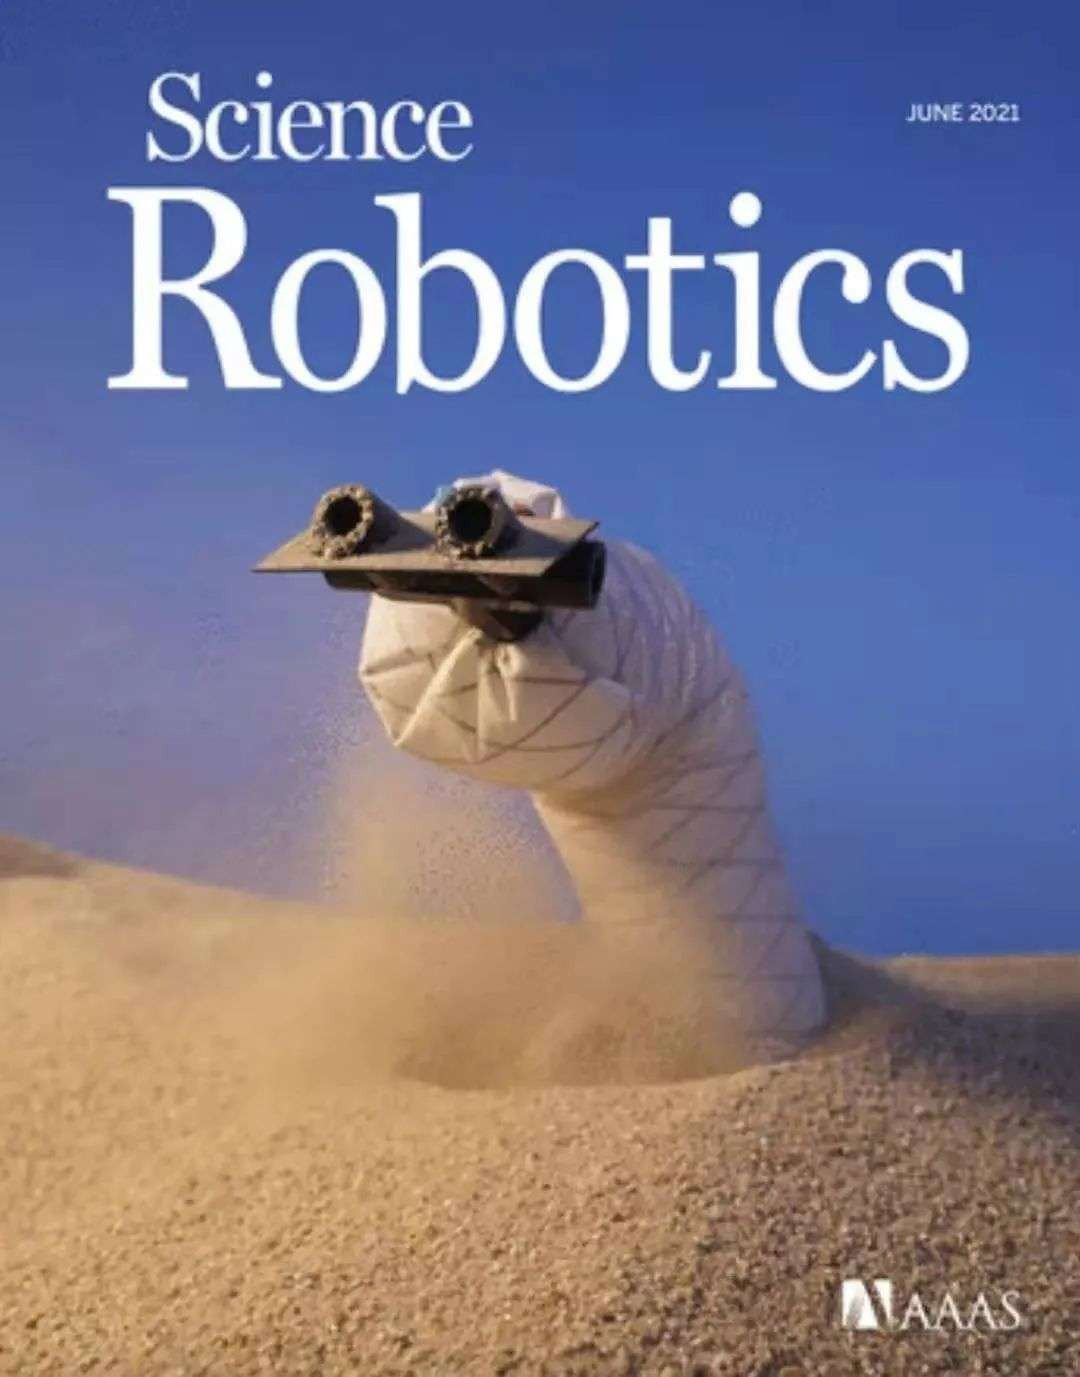 地下挖洞软体机器人登Science子刊封面，未来或将奔赴外太空